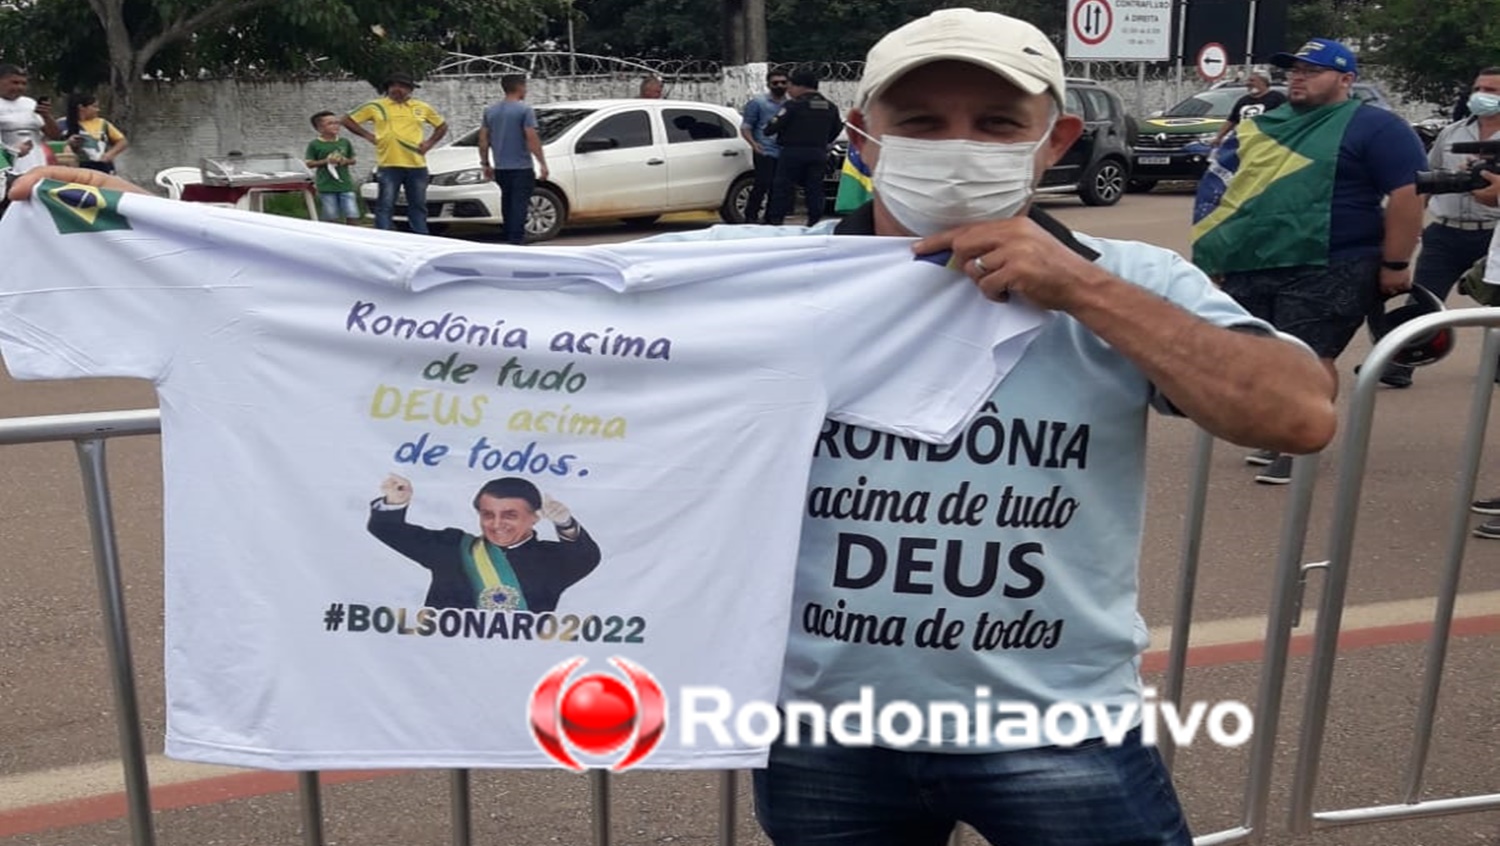 FÃS: 'Admiro Bolsonaro pelo valor que dá à família', diz apoiador do presidente